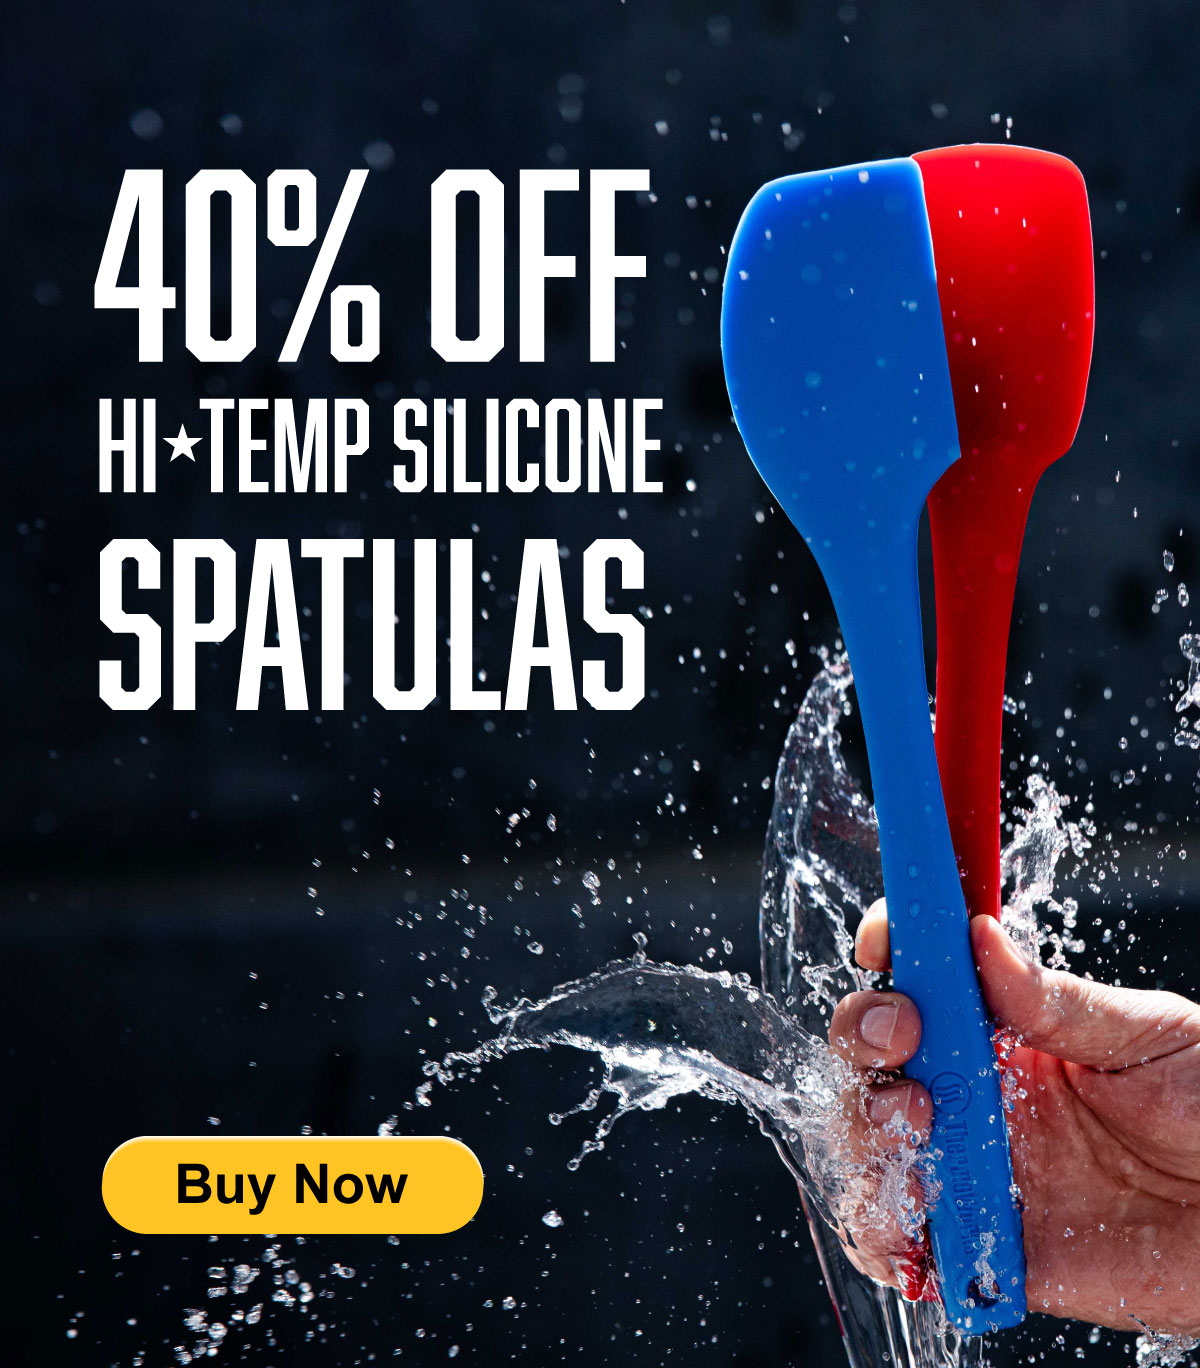 Hi-Temp Silicone Spatulas